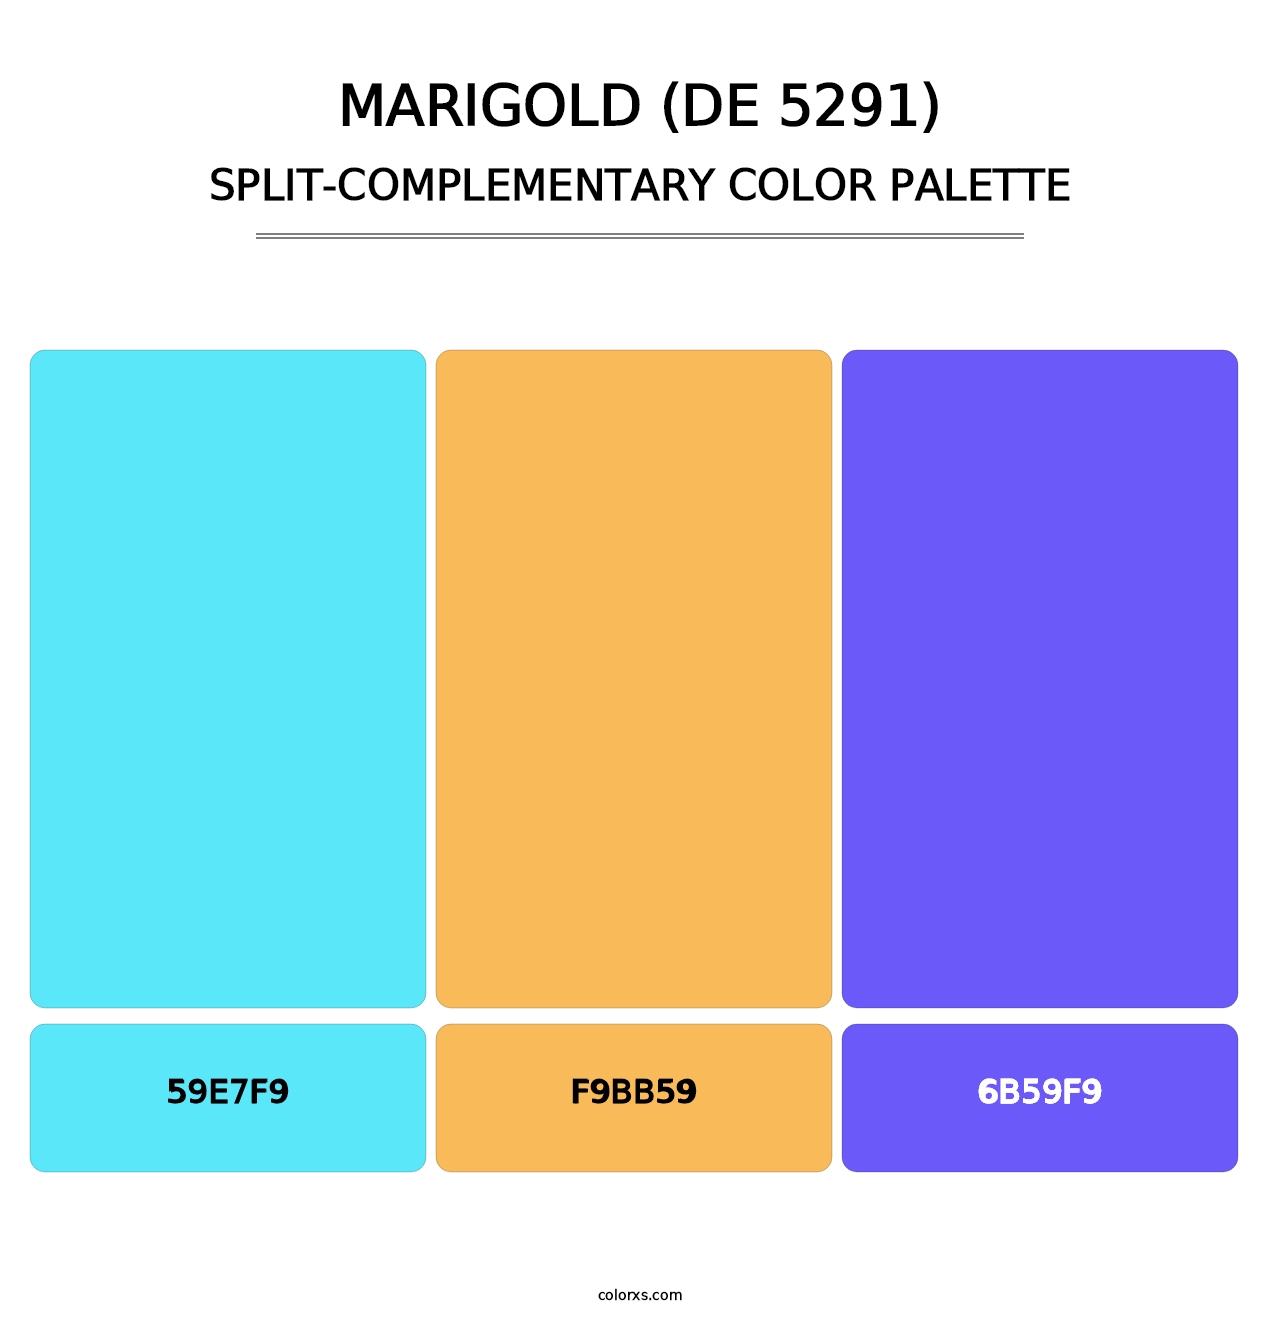 Marigold (DE 5291) - Split-Complementary Color Palette